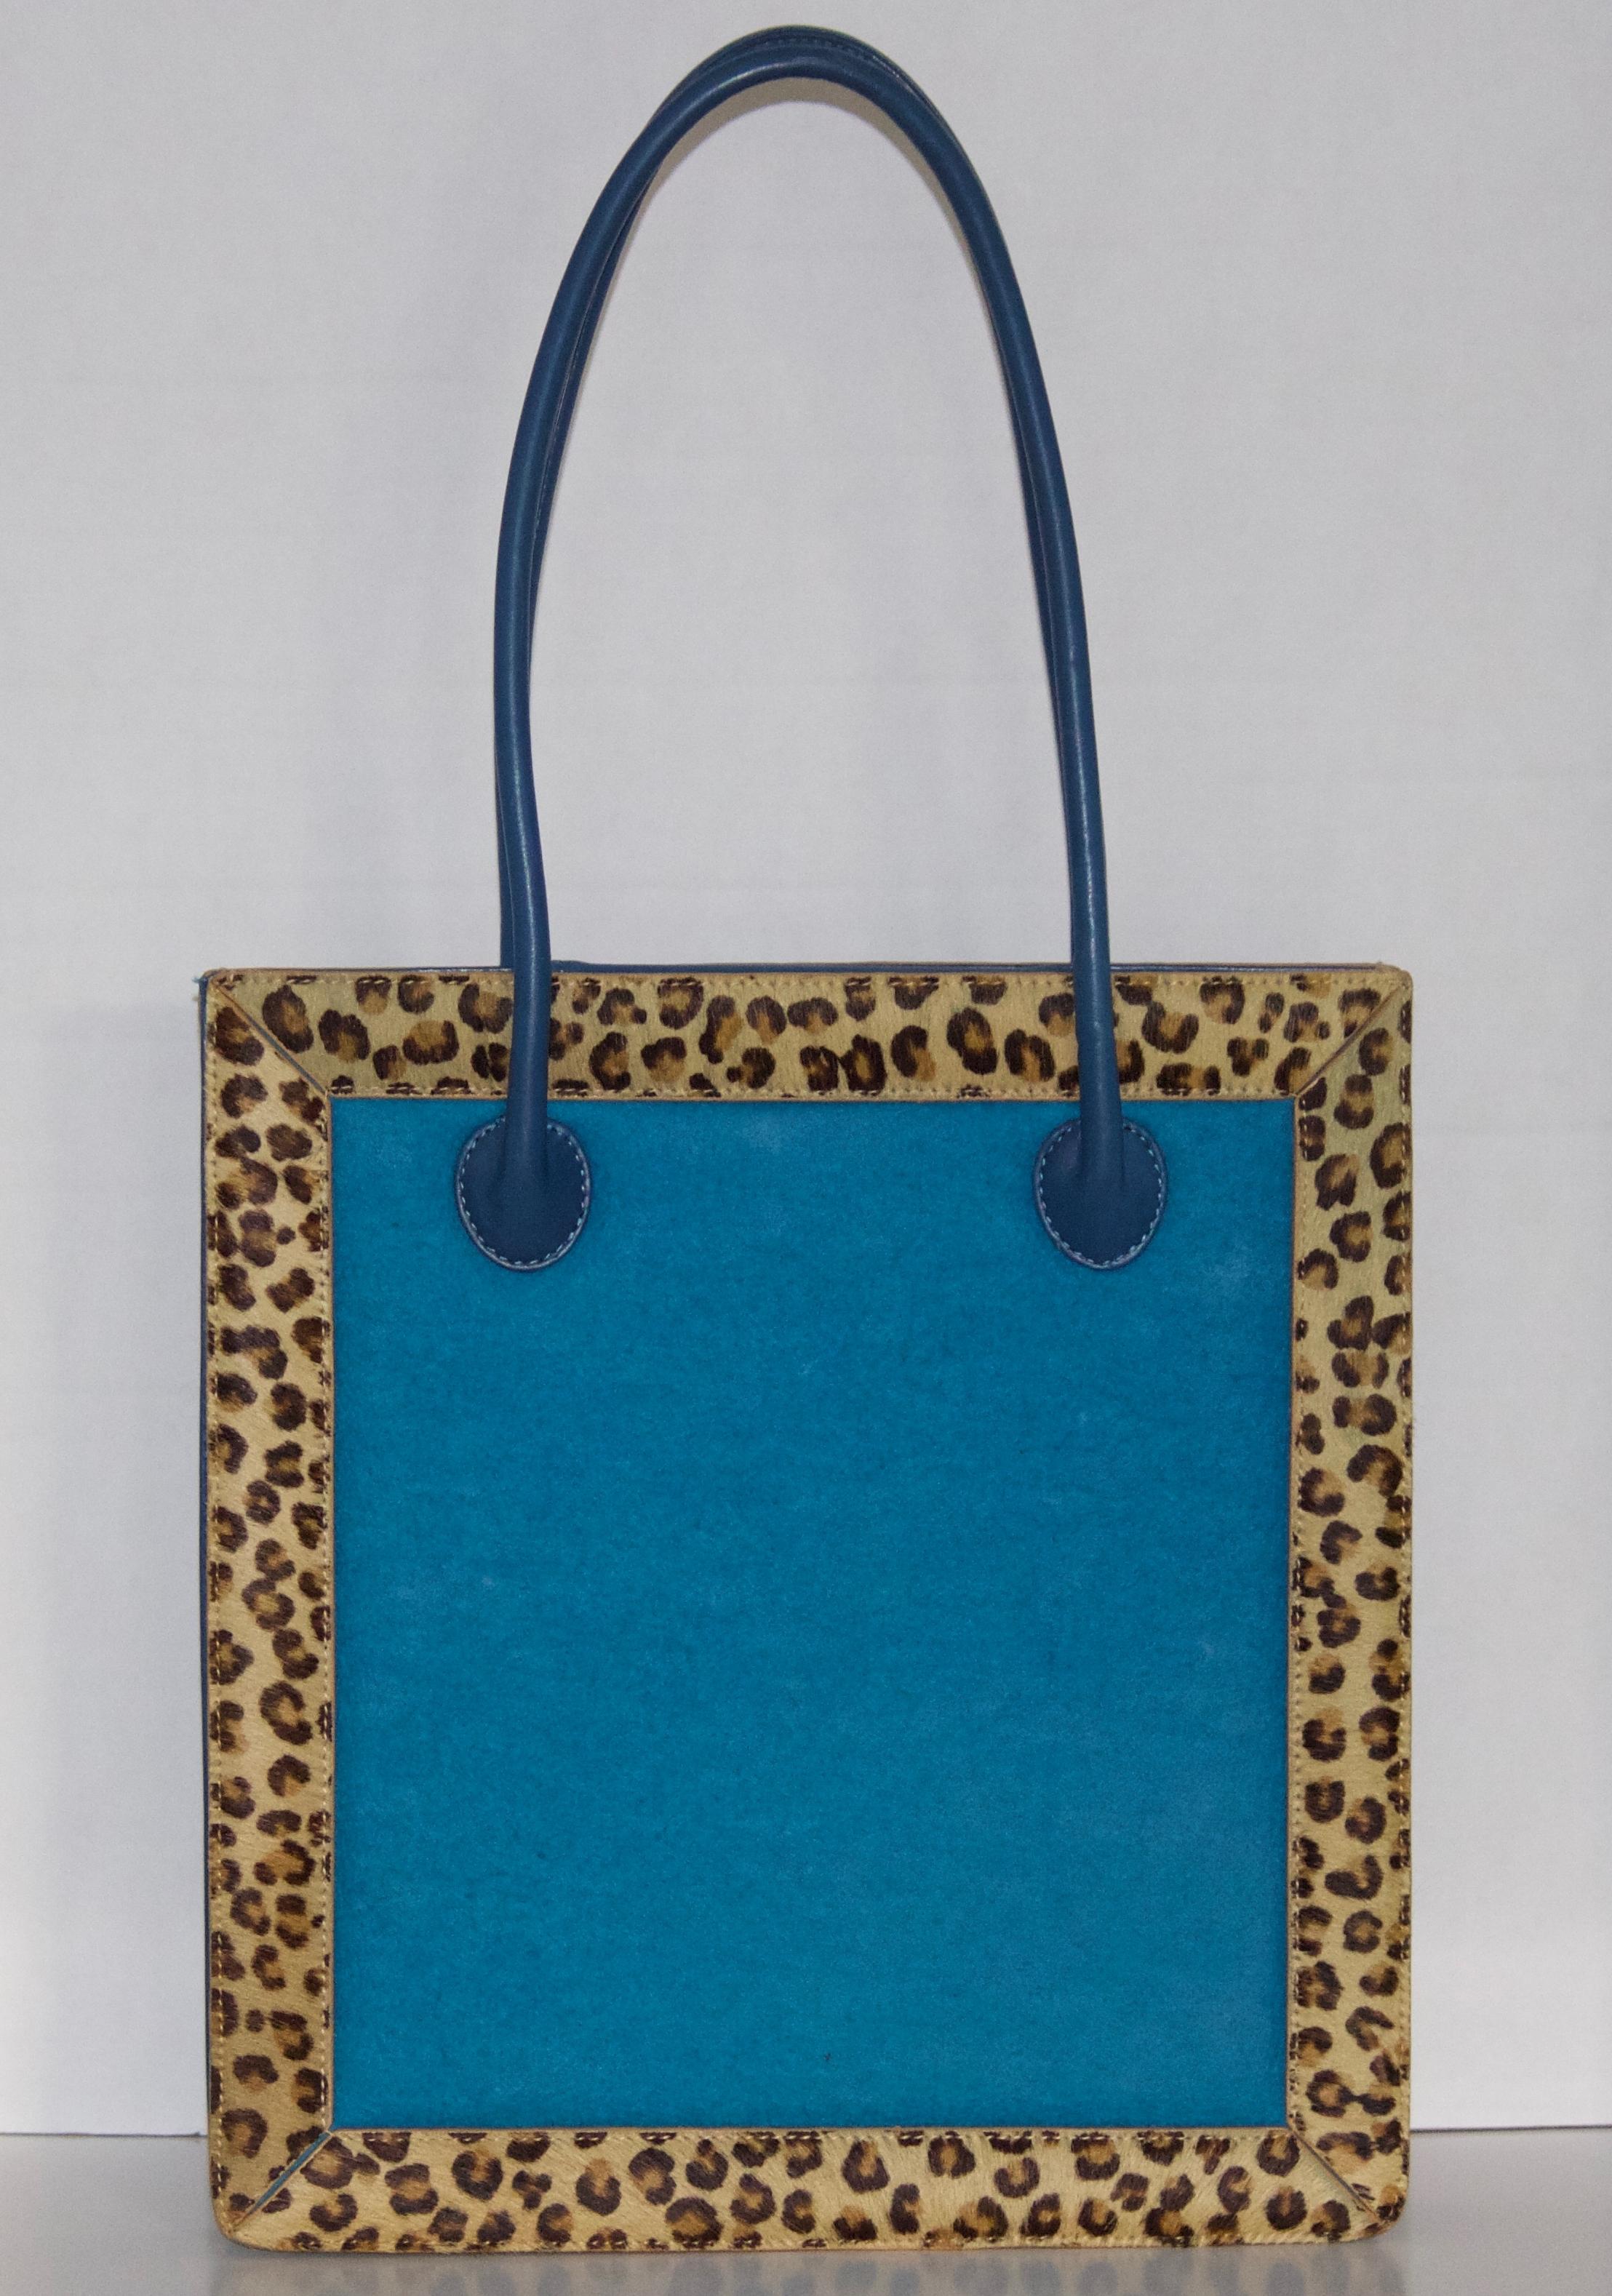 Artful Vintage Nicole Miller Novelty Leather Handbag-Leopard Calf Hair Fur Trim For Sale 1